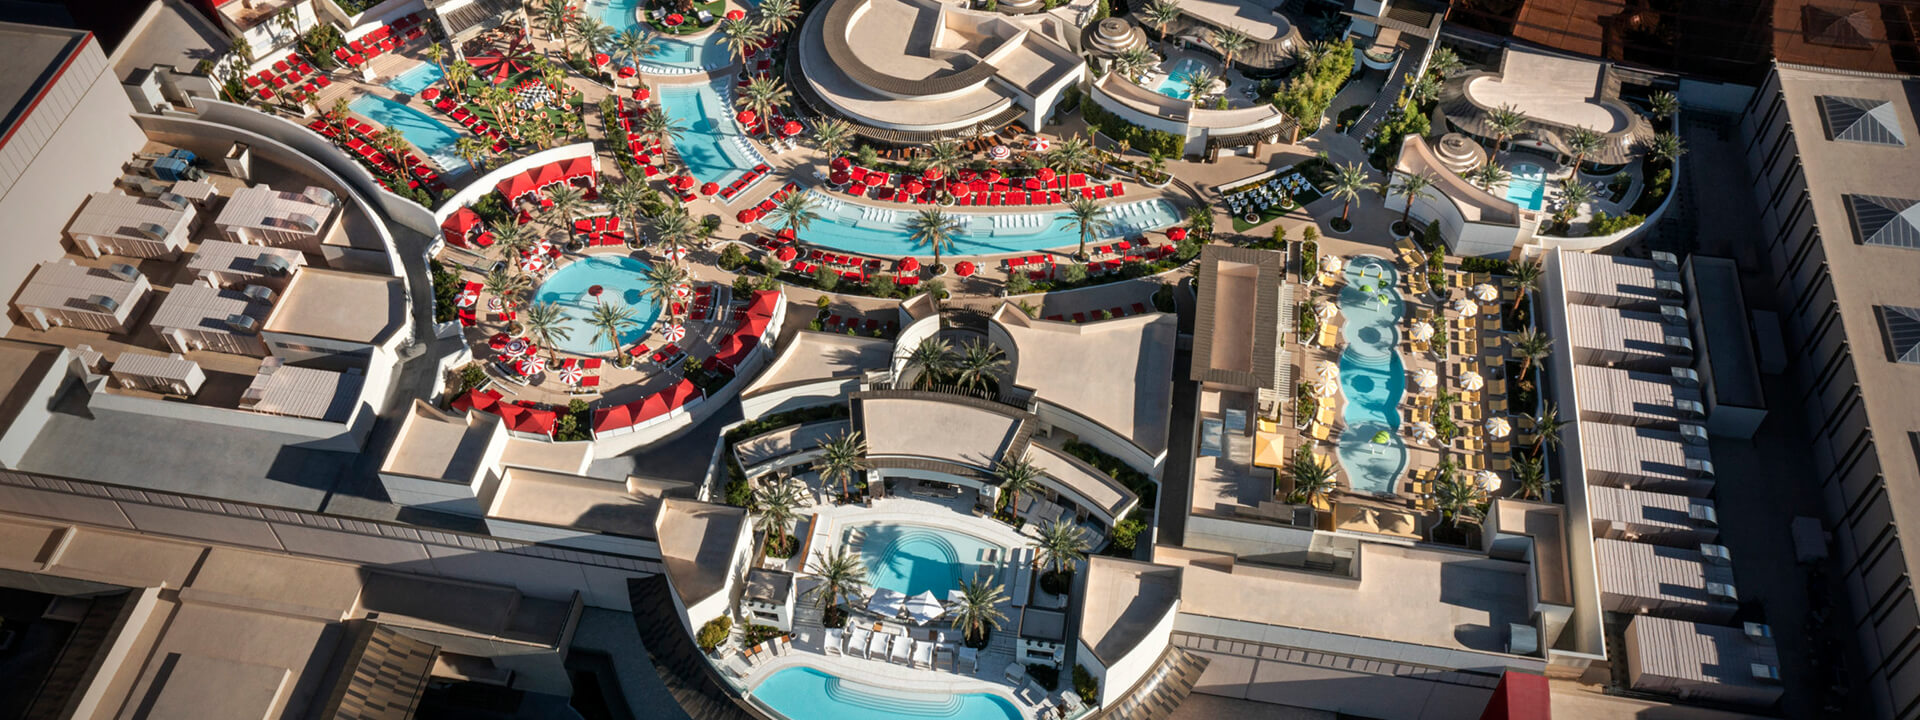 Eat. Swim. Play at Resorts World Las Vegas